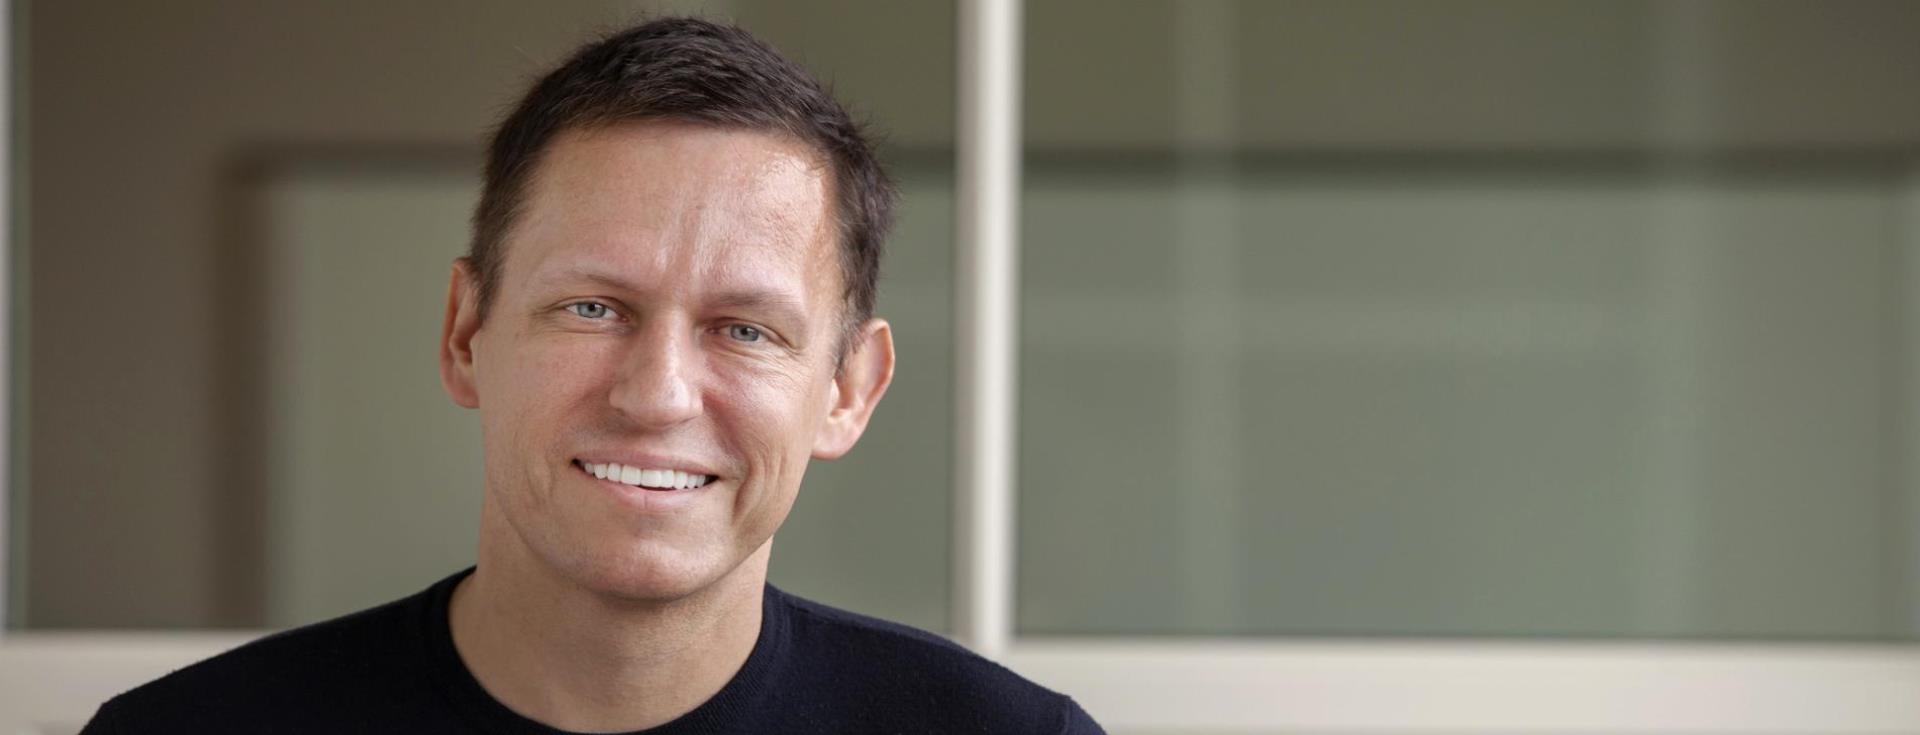 Dünyanın En Etkili Girişimcilerinden Peter Thiel'a Ait İlham Verici Sözler